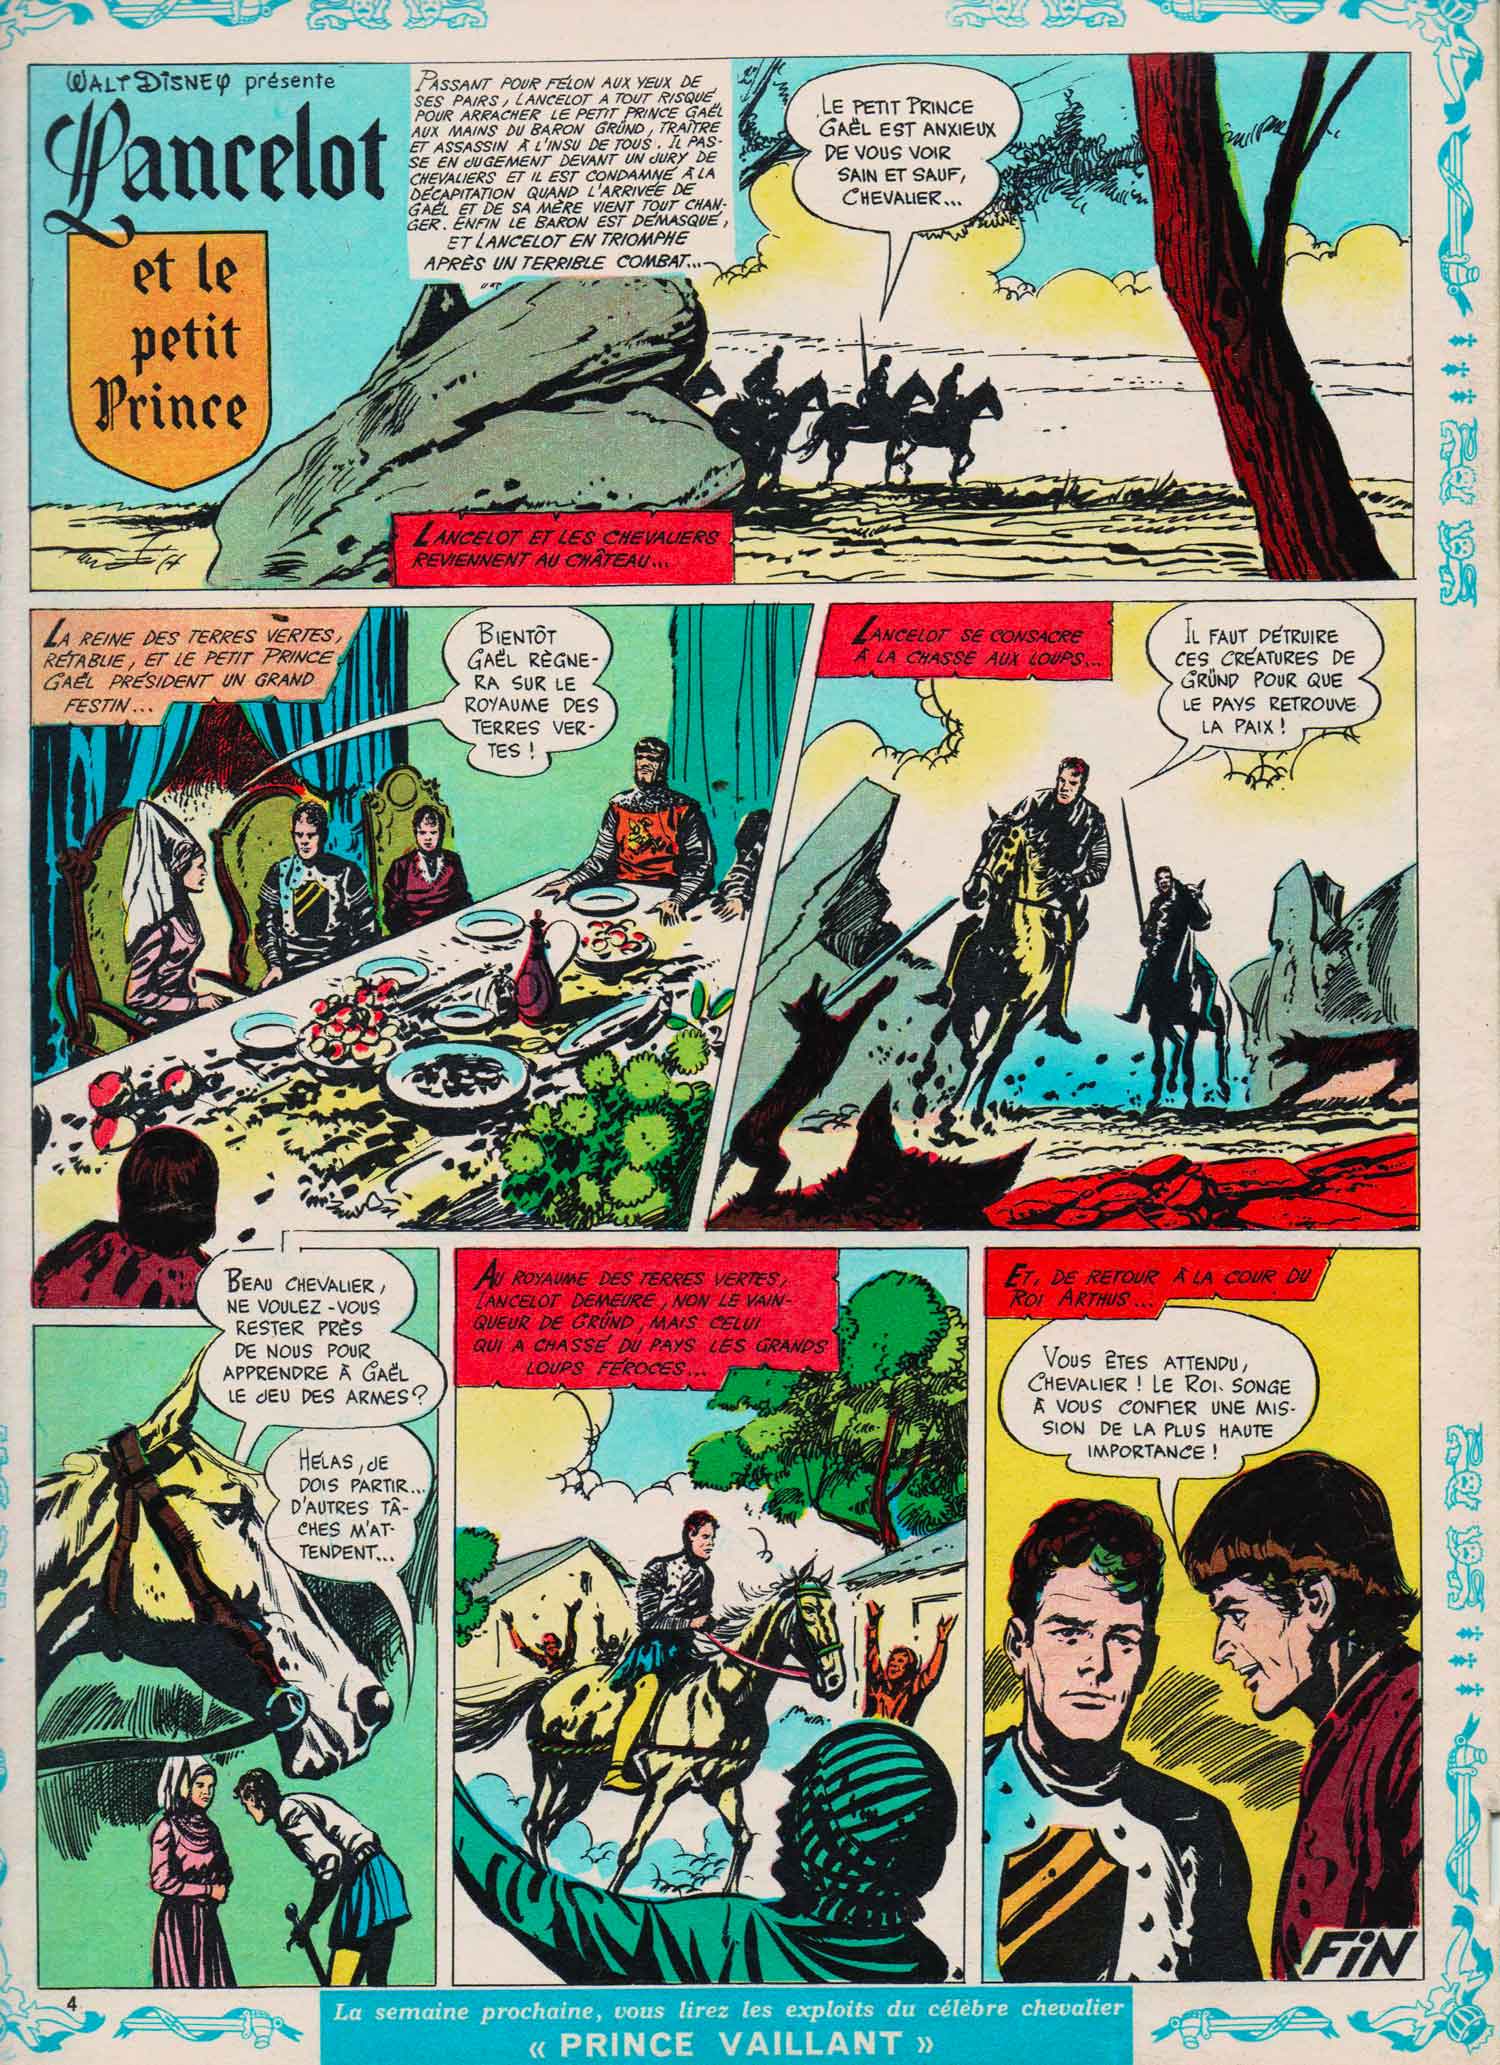 « Lancelot chevalier de la Table ronde » : dernière planche dans le n° 461 (26/03/1961) du Journal de Mickey.